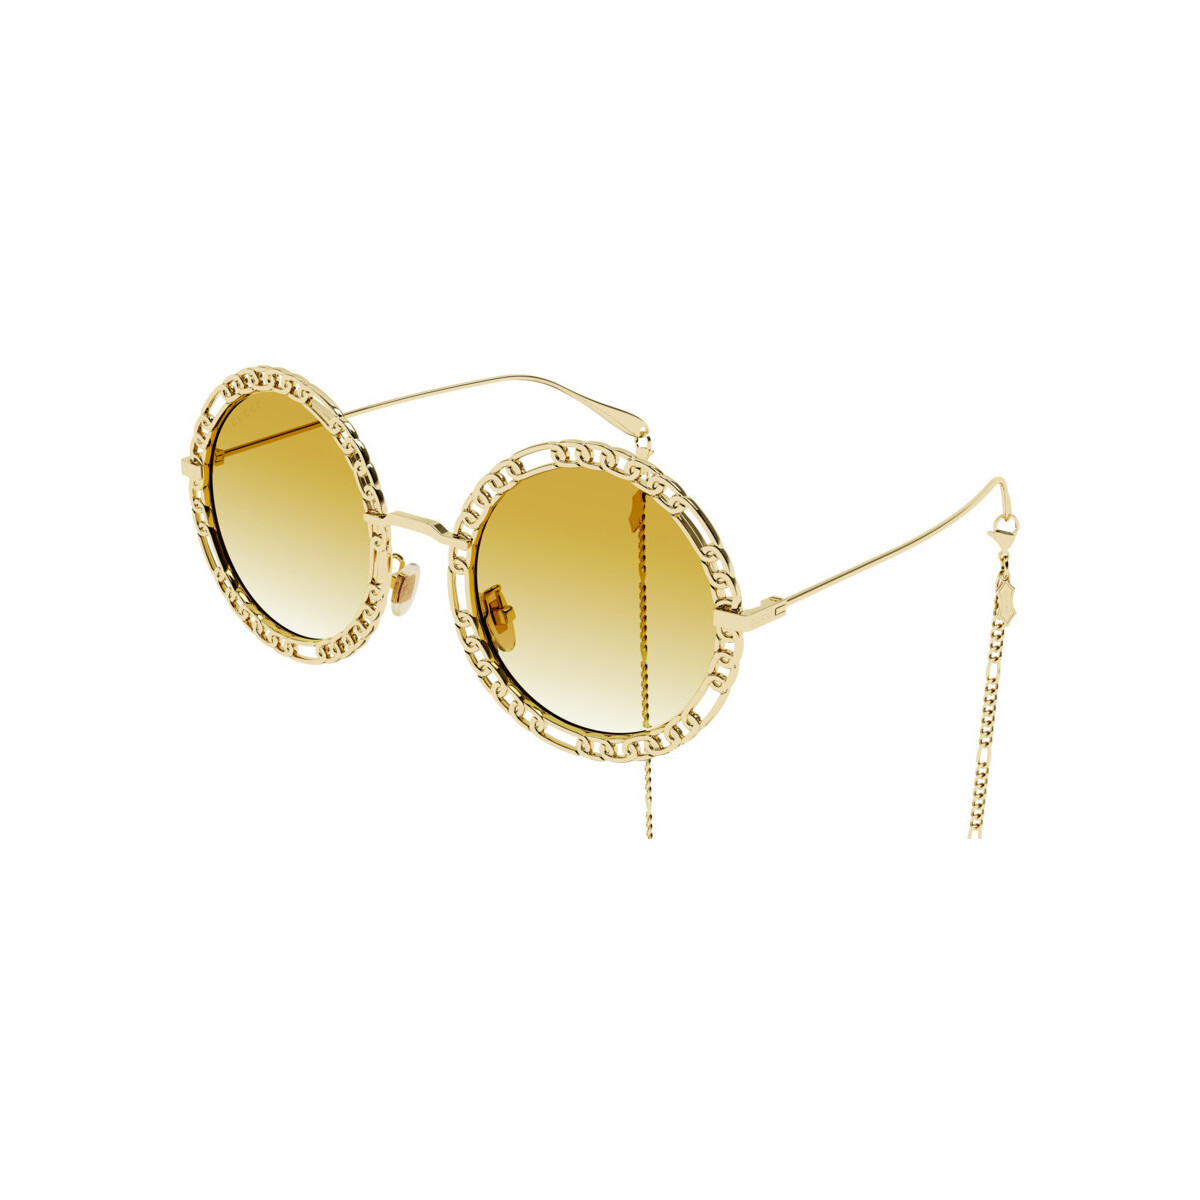 Orologi & Gioielli Donna Occhiali da sole Gucci GG1113S Occhiali da sole, Oro/Giallo, 53 mm Oro